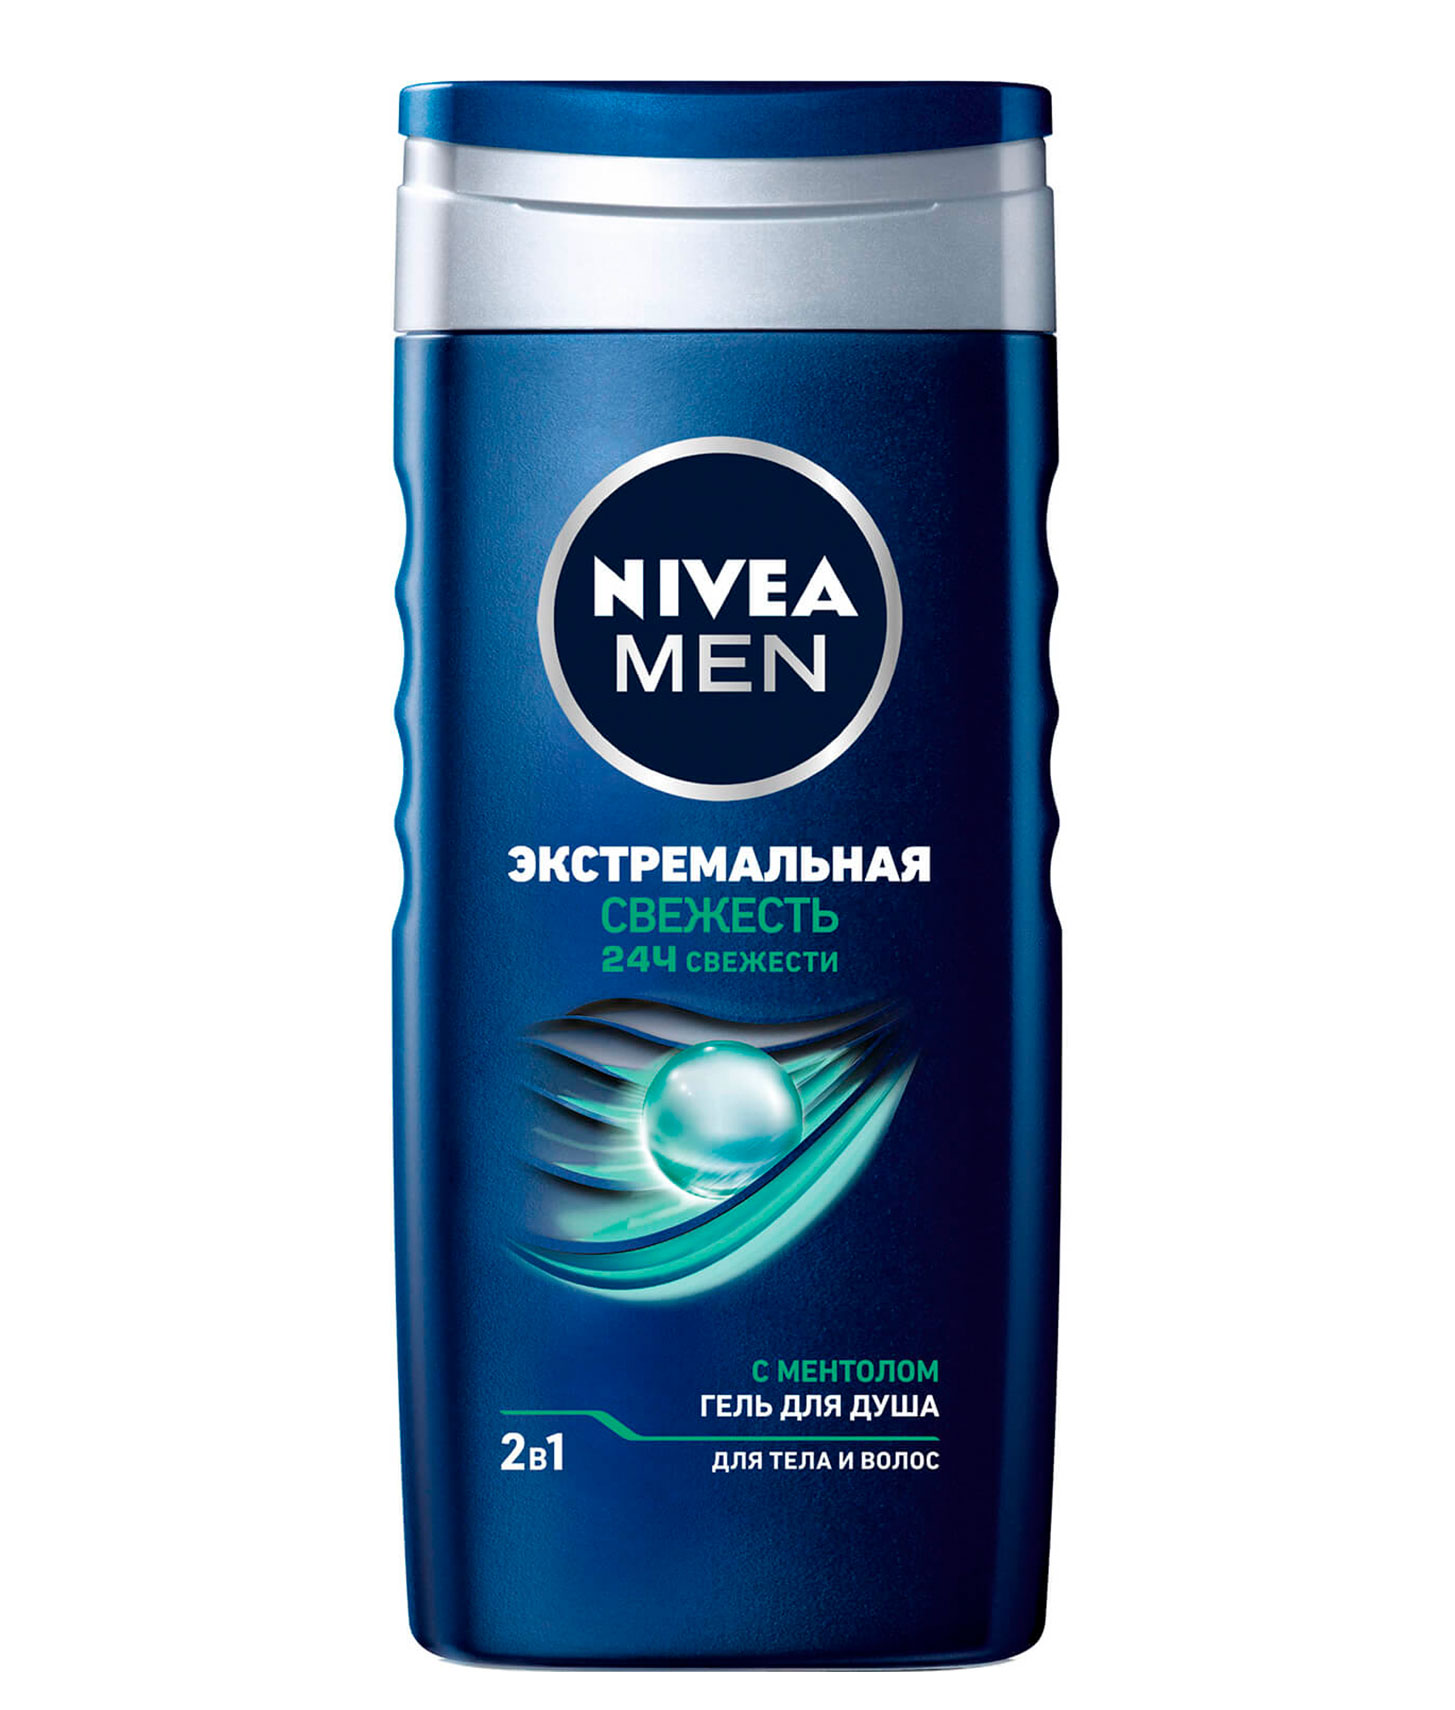 Гель для душа 2в1 для тела и волос Nivea men "Экстремальная свежесть" 250 ml